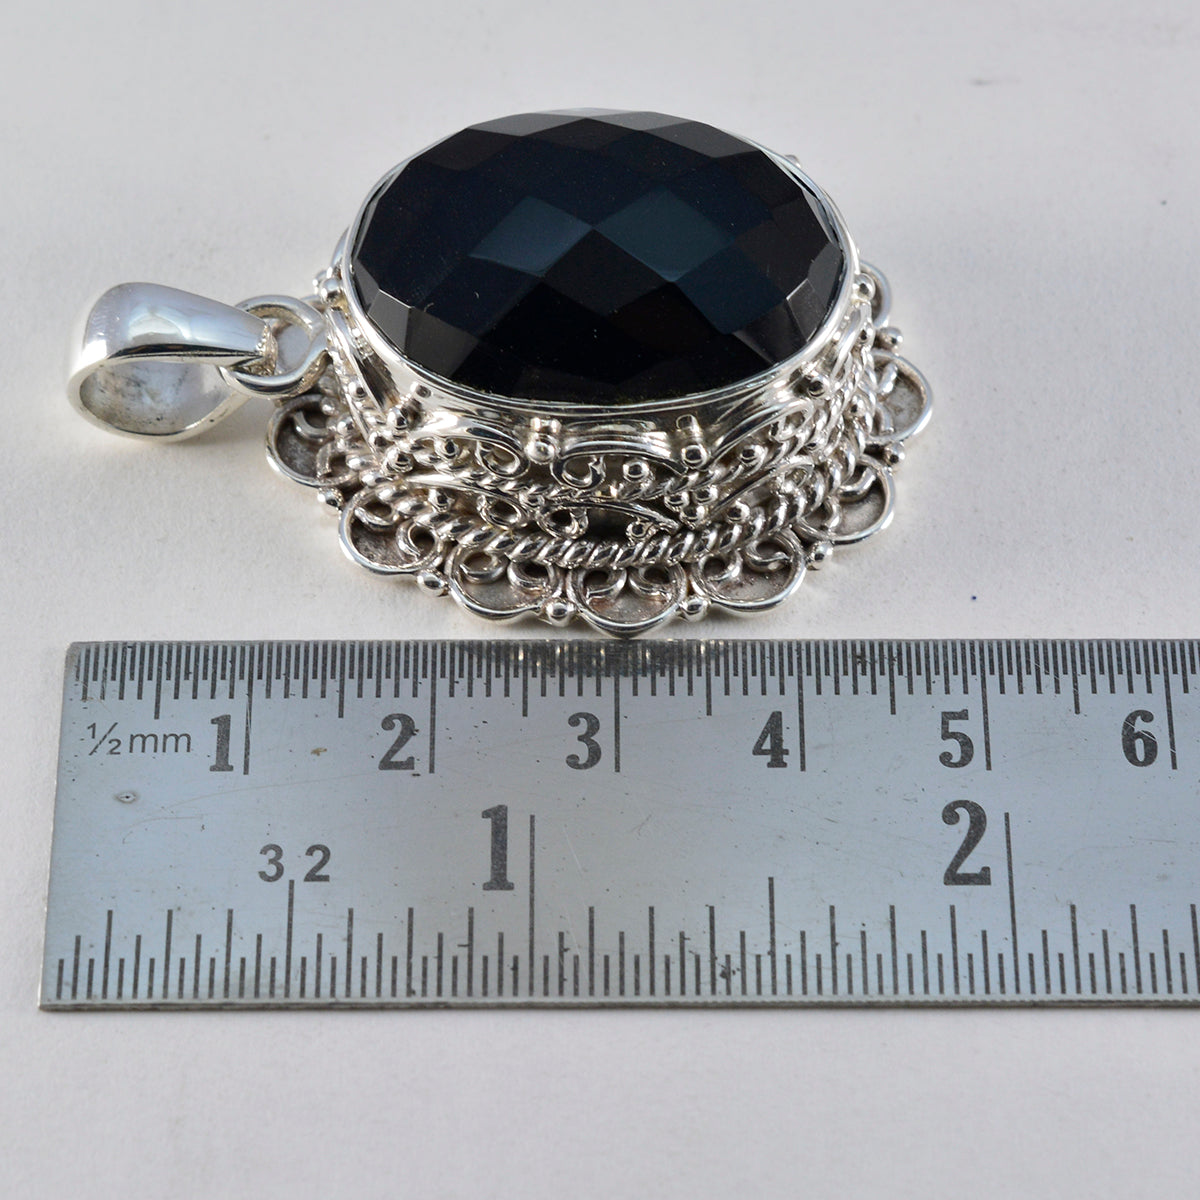 riyo foxy pierre précieuse ovale damier noir onyx noir pendentif en argent sterling cadeau pour Noël